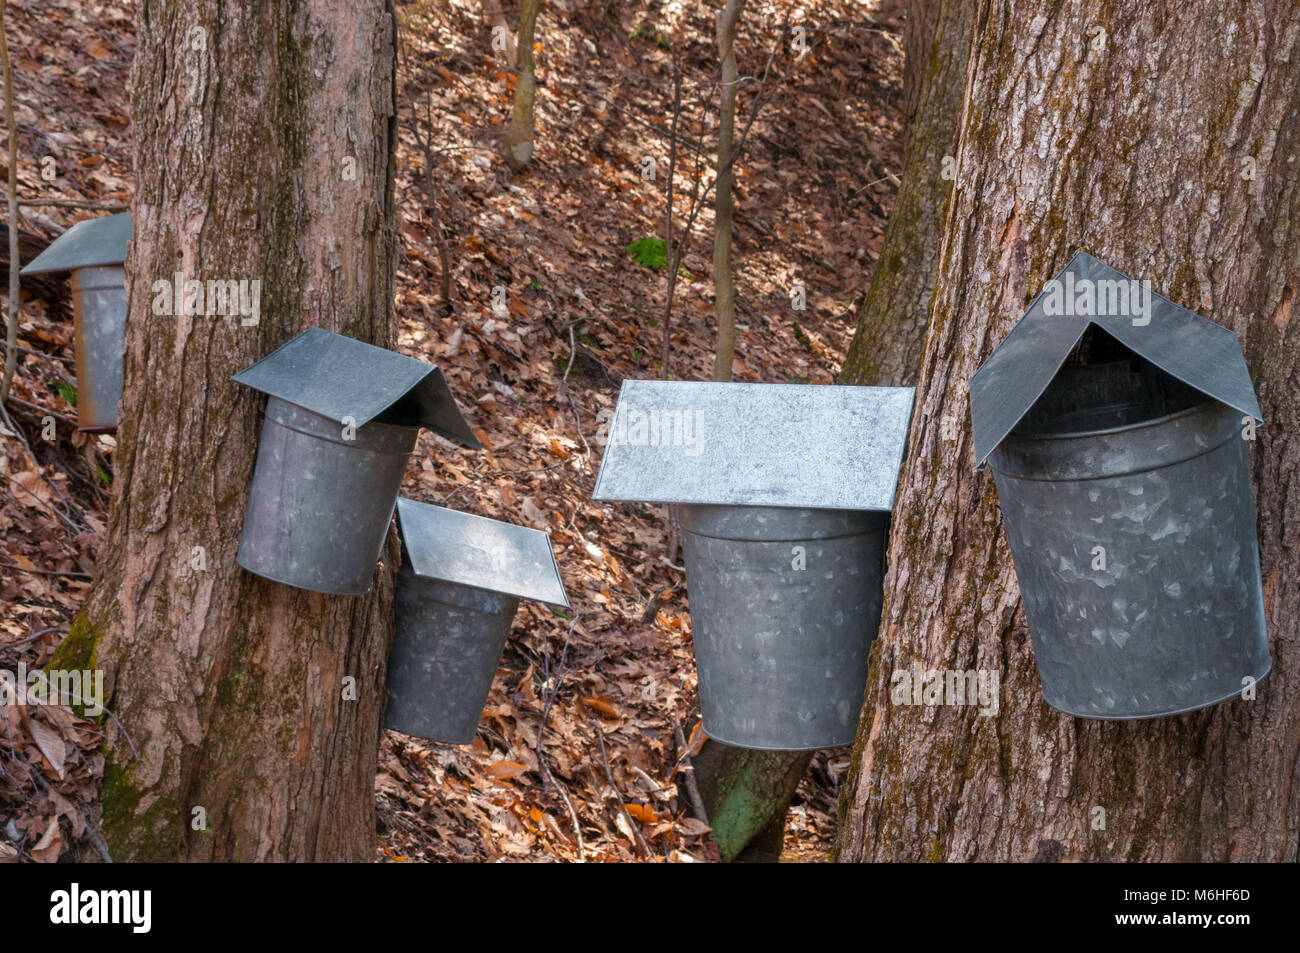 Ahorn Zuckerpaste verzinkt sap Eimer hängen an Zucker-ahorn Bäume, Sammeln von SAP auf einen späten Winter Tag in New England. Stockfoto